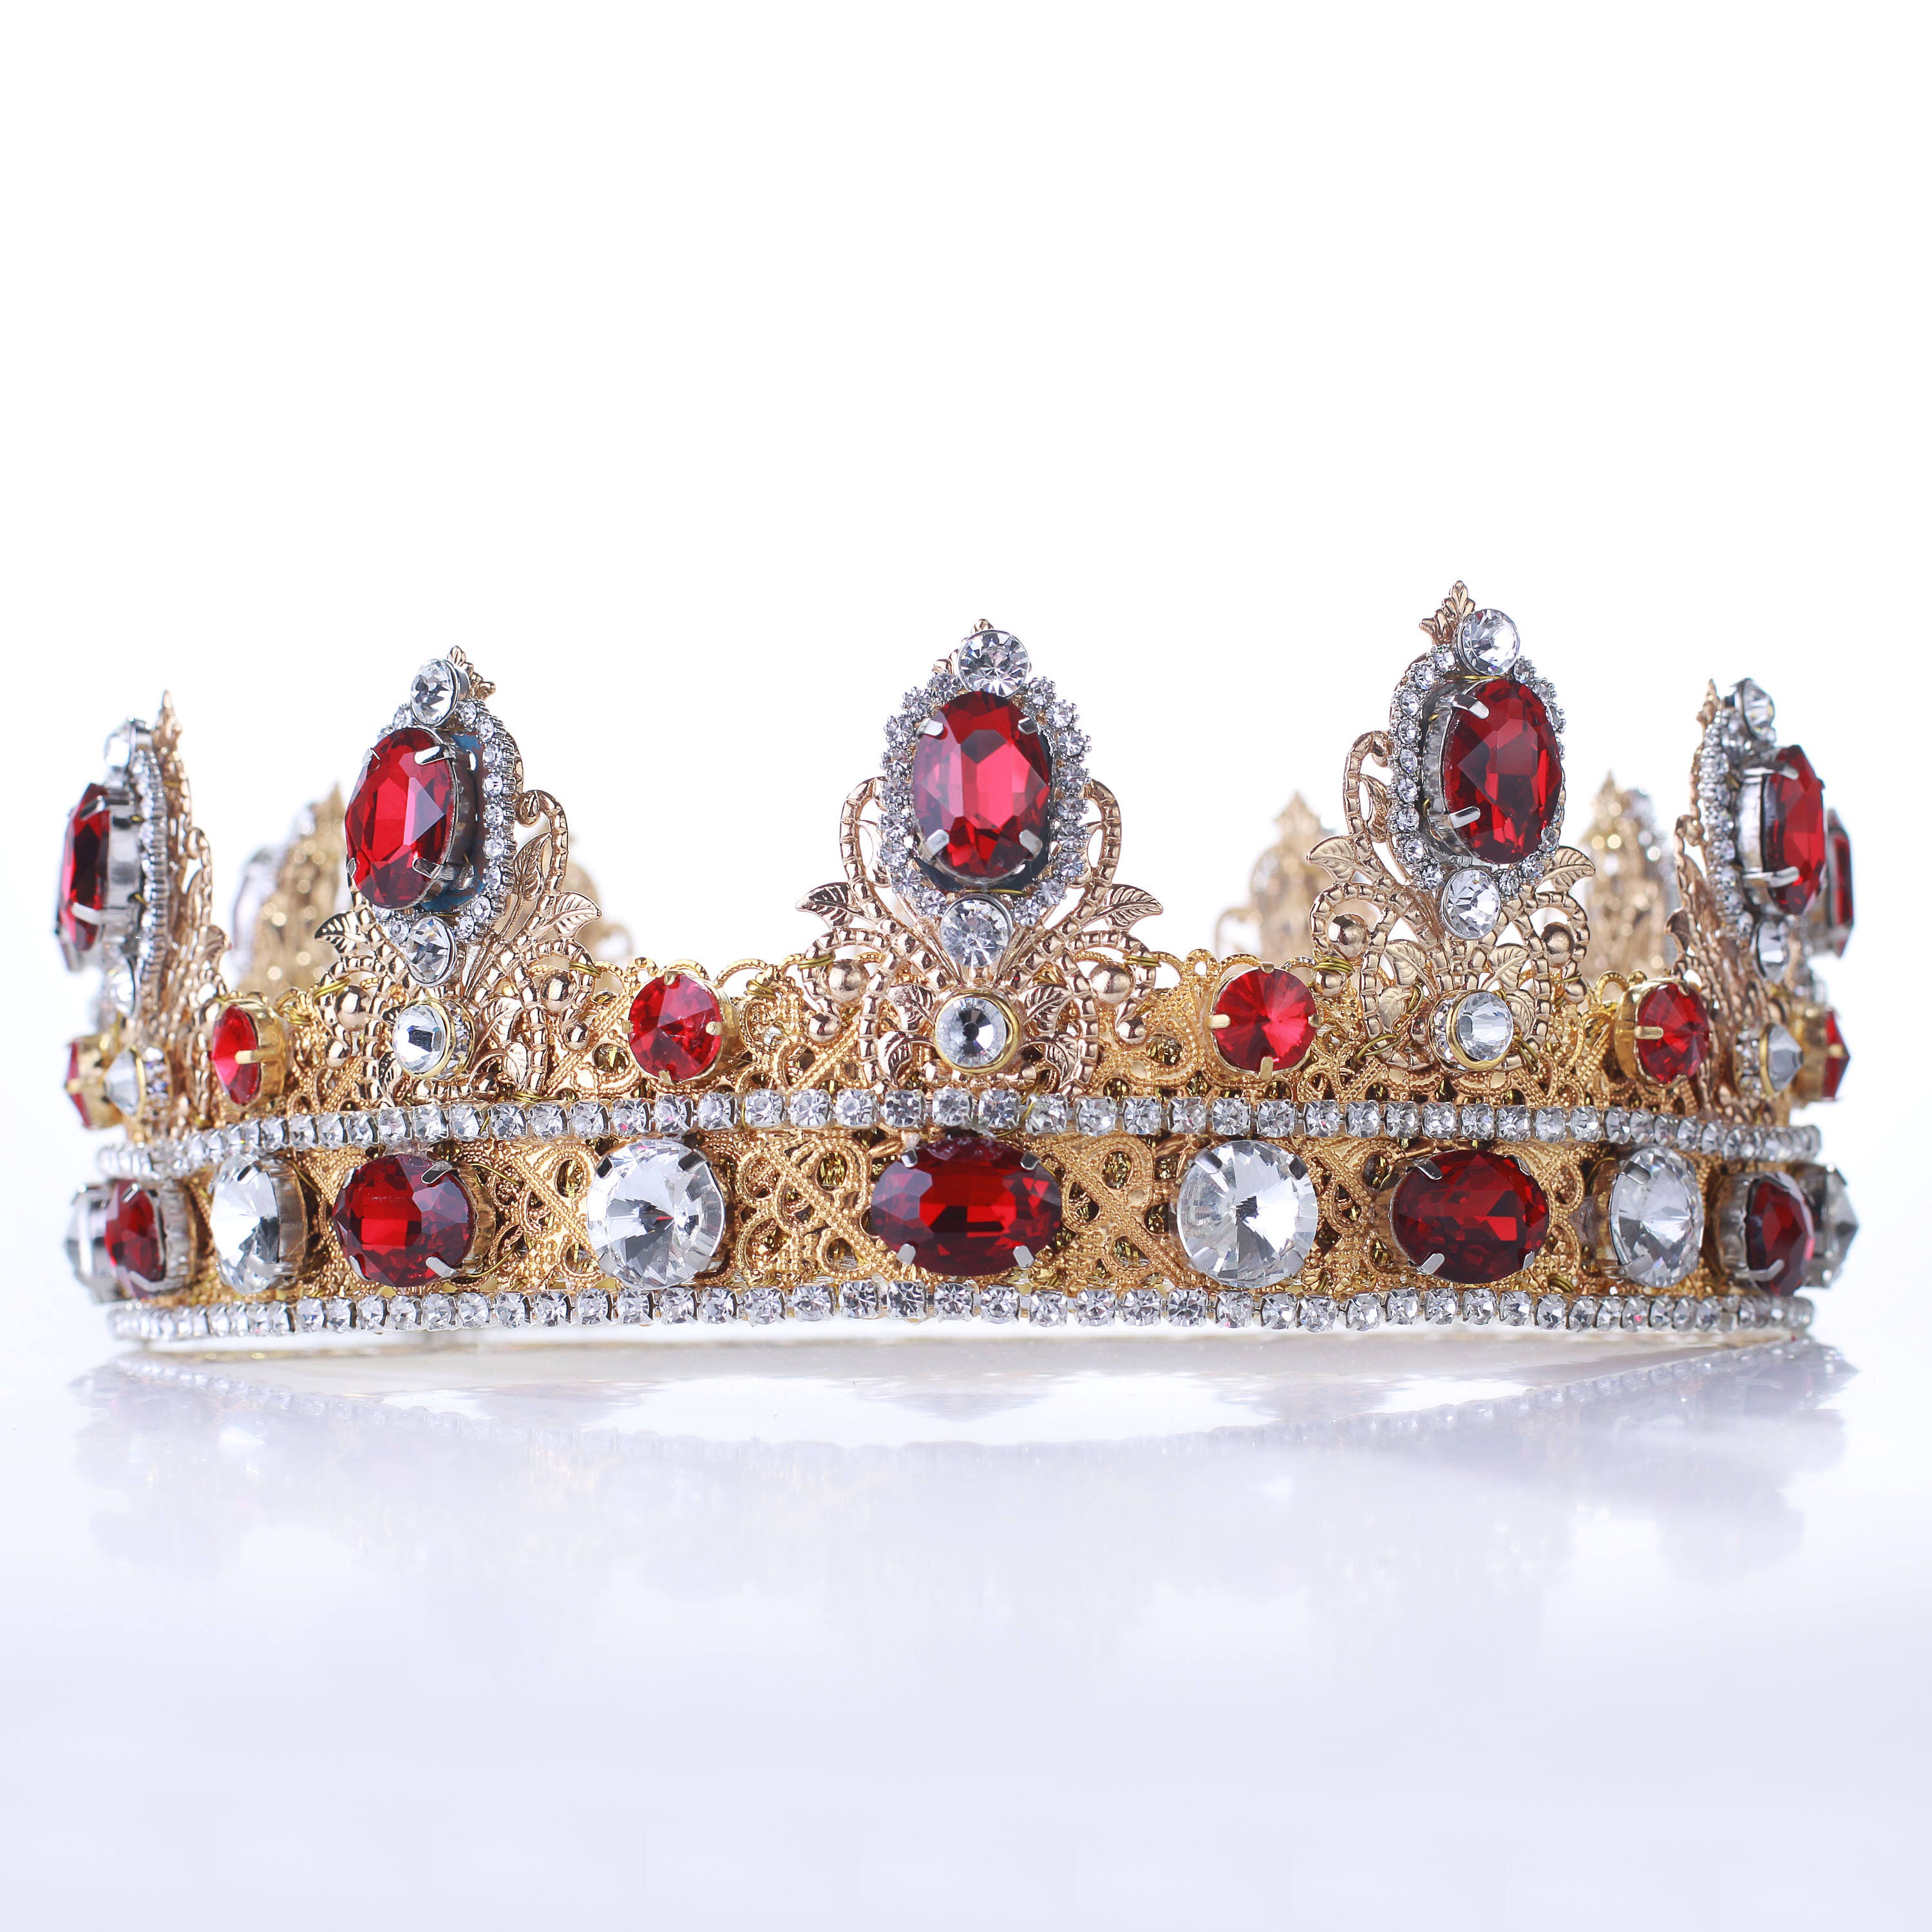 Download KING CROWN Mens crown Custom crown medieval crown gold